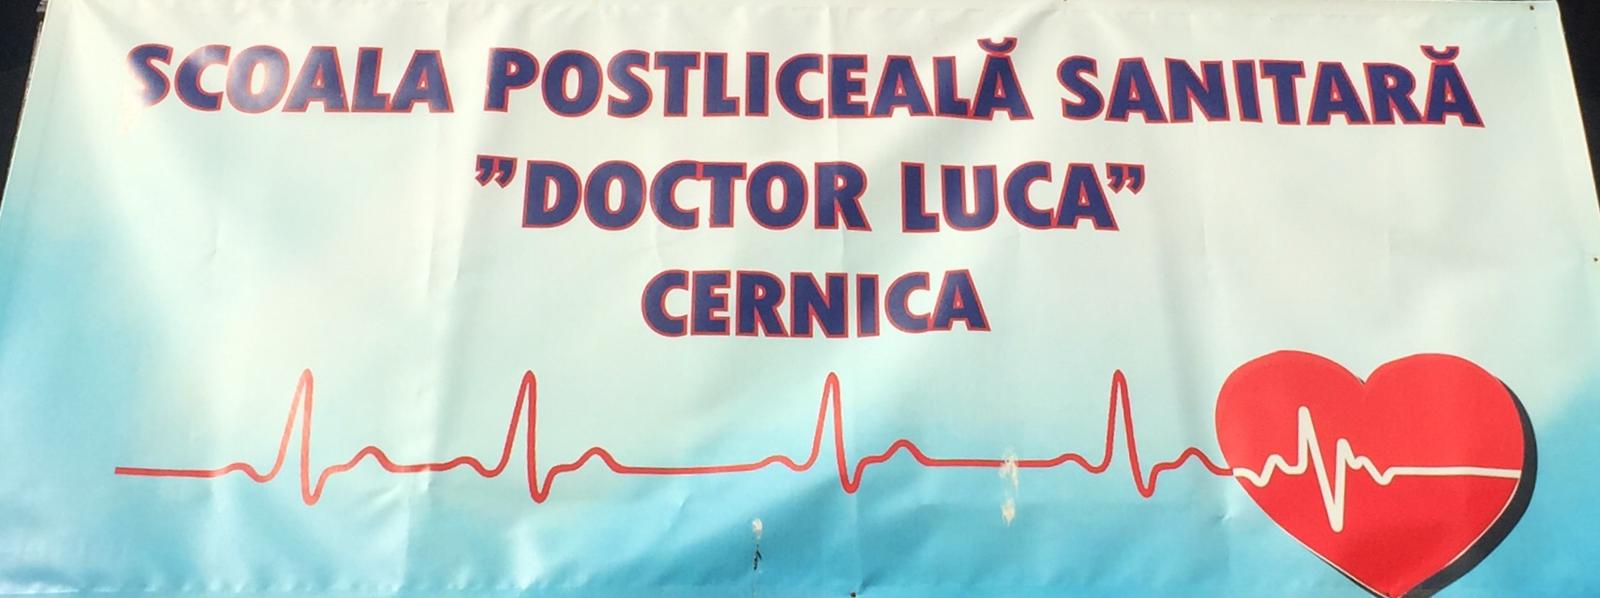 Școala Postliceală Sanitară ”Doctor Luca”, Cernica logo